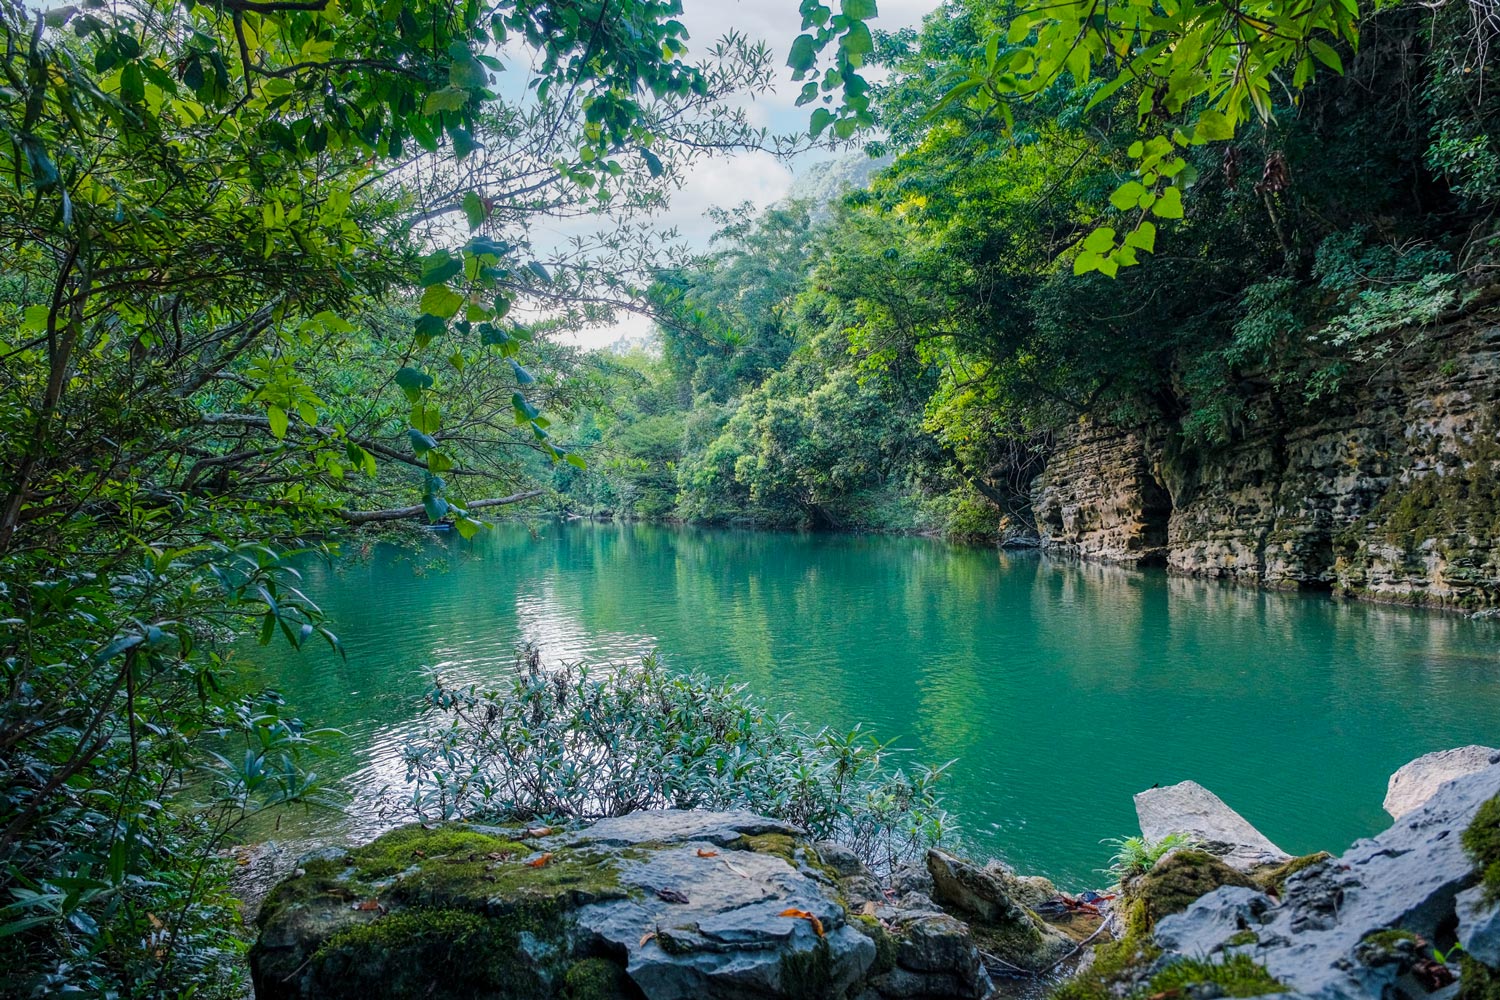 Khung cảnh hồ nước xanh mát cạnh khu cắm trại Hung Đụng.